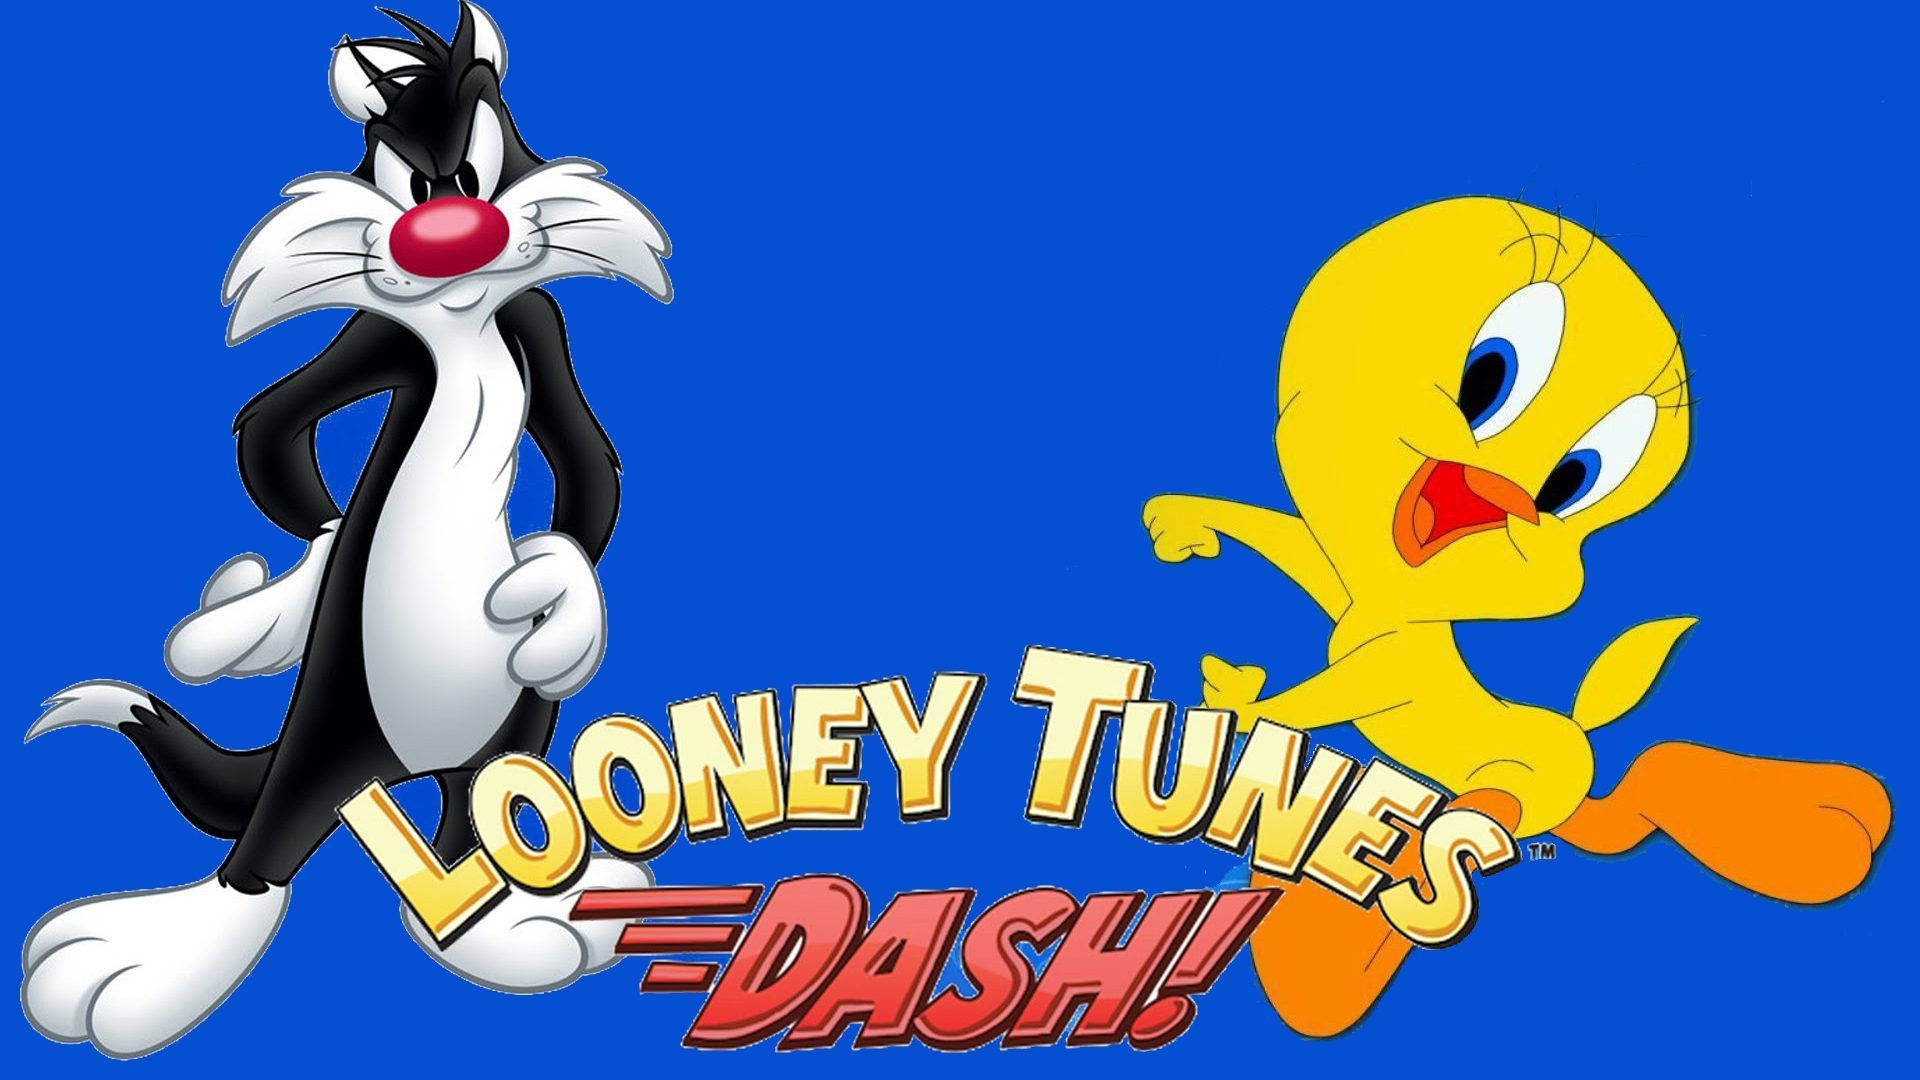 Sylvesterund Looney Tunes Dash Wallpaper